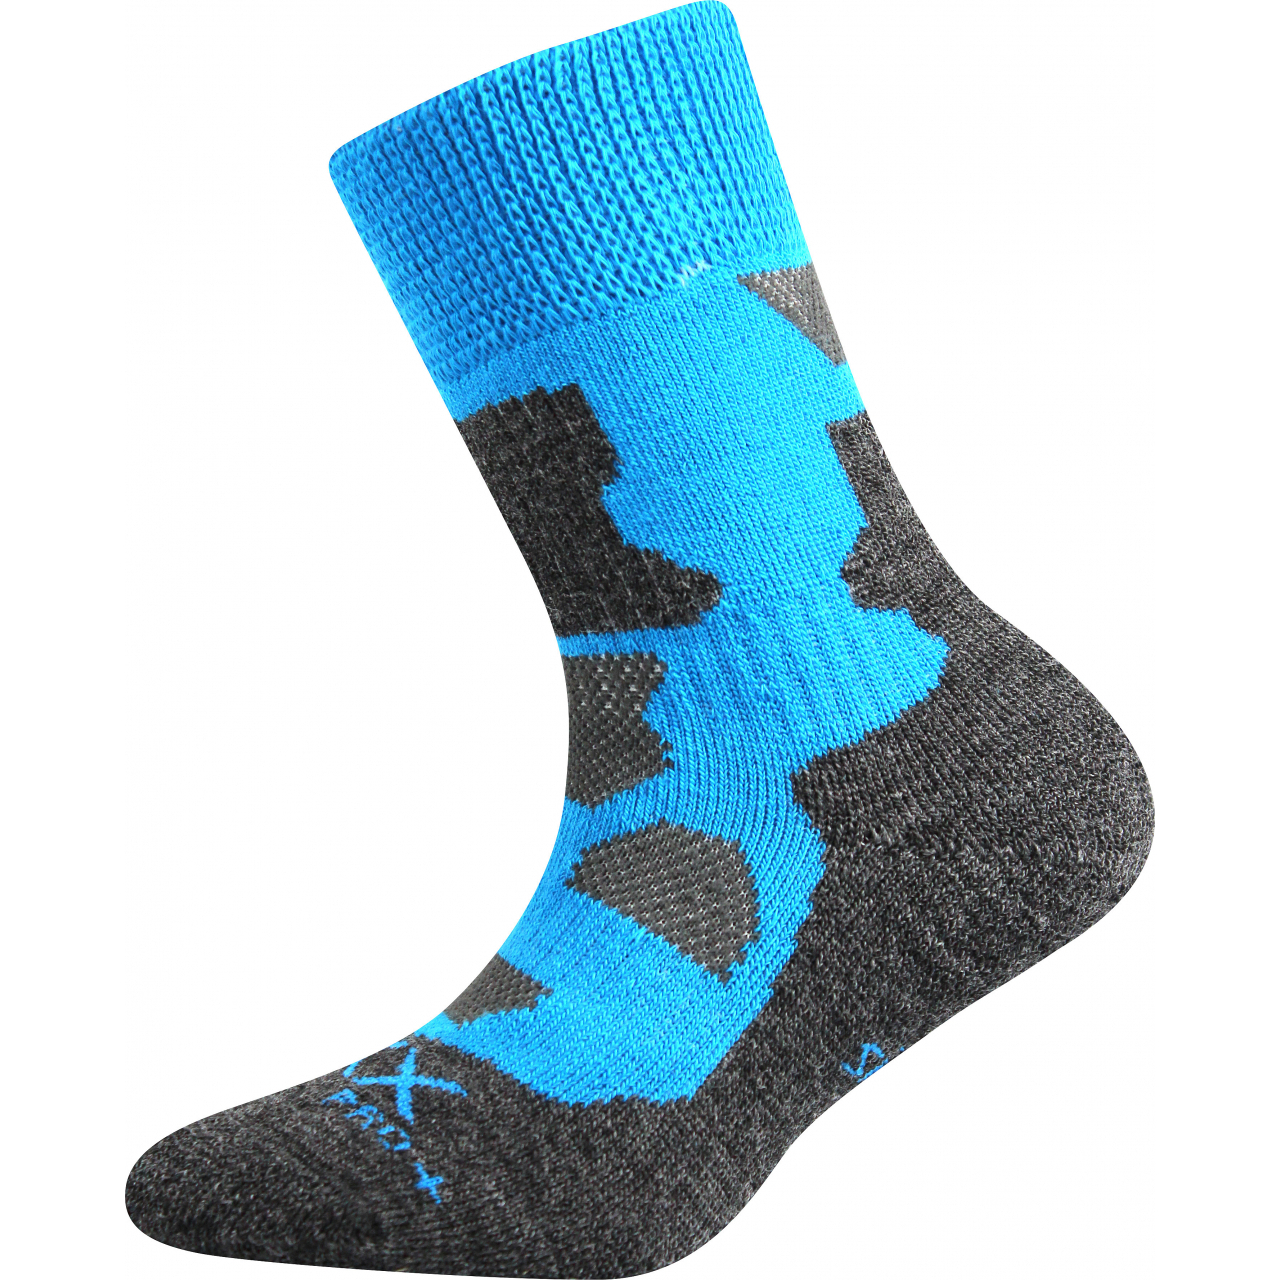 Ponožky dětské zimní Voxx Etrexík - modré-šedé, 20-24